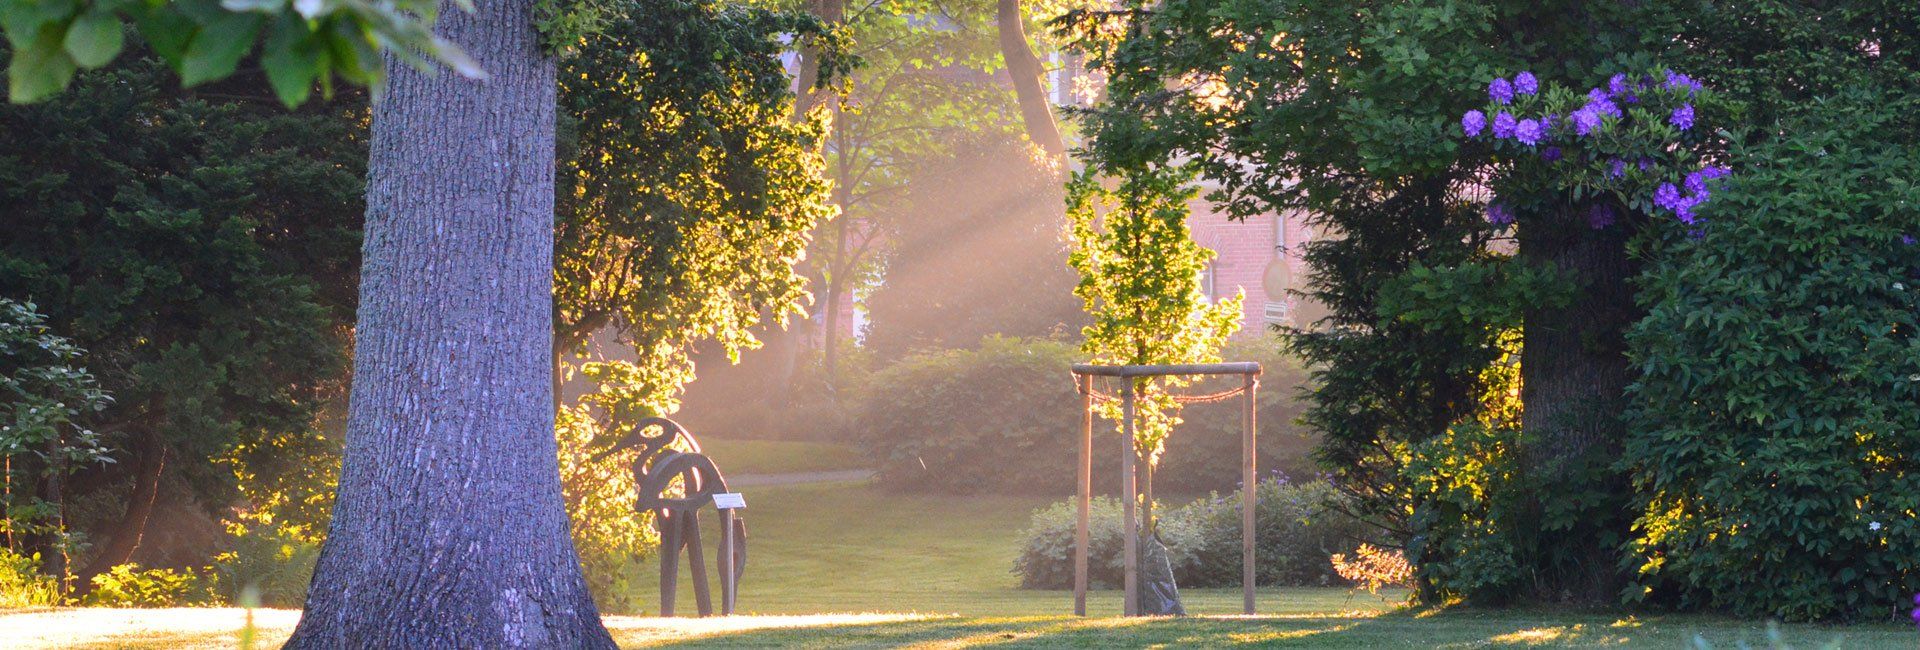 Gardinger Stadtpark. Das Bild zeigt eine Aufnahme kurz nach Sonnenaufgang.